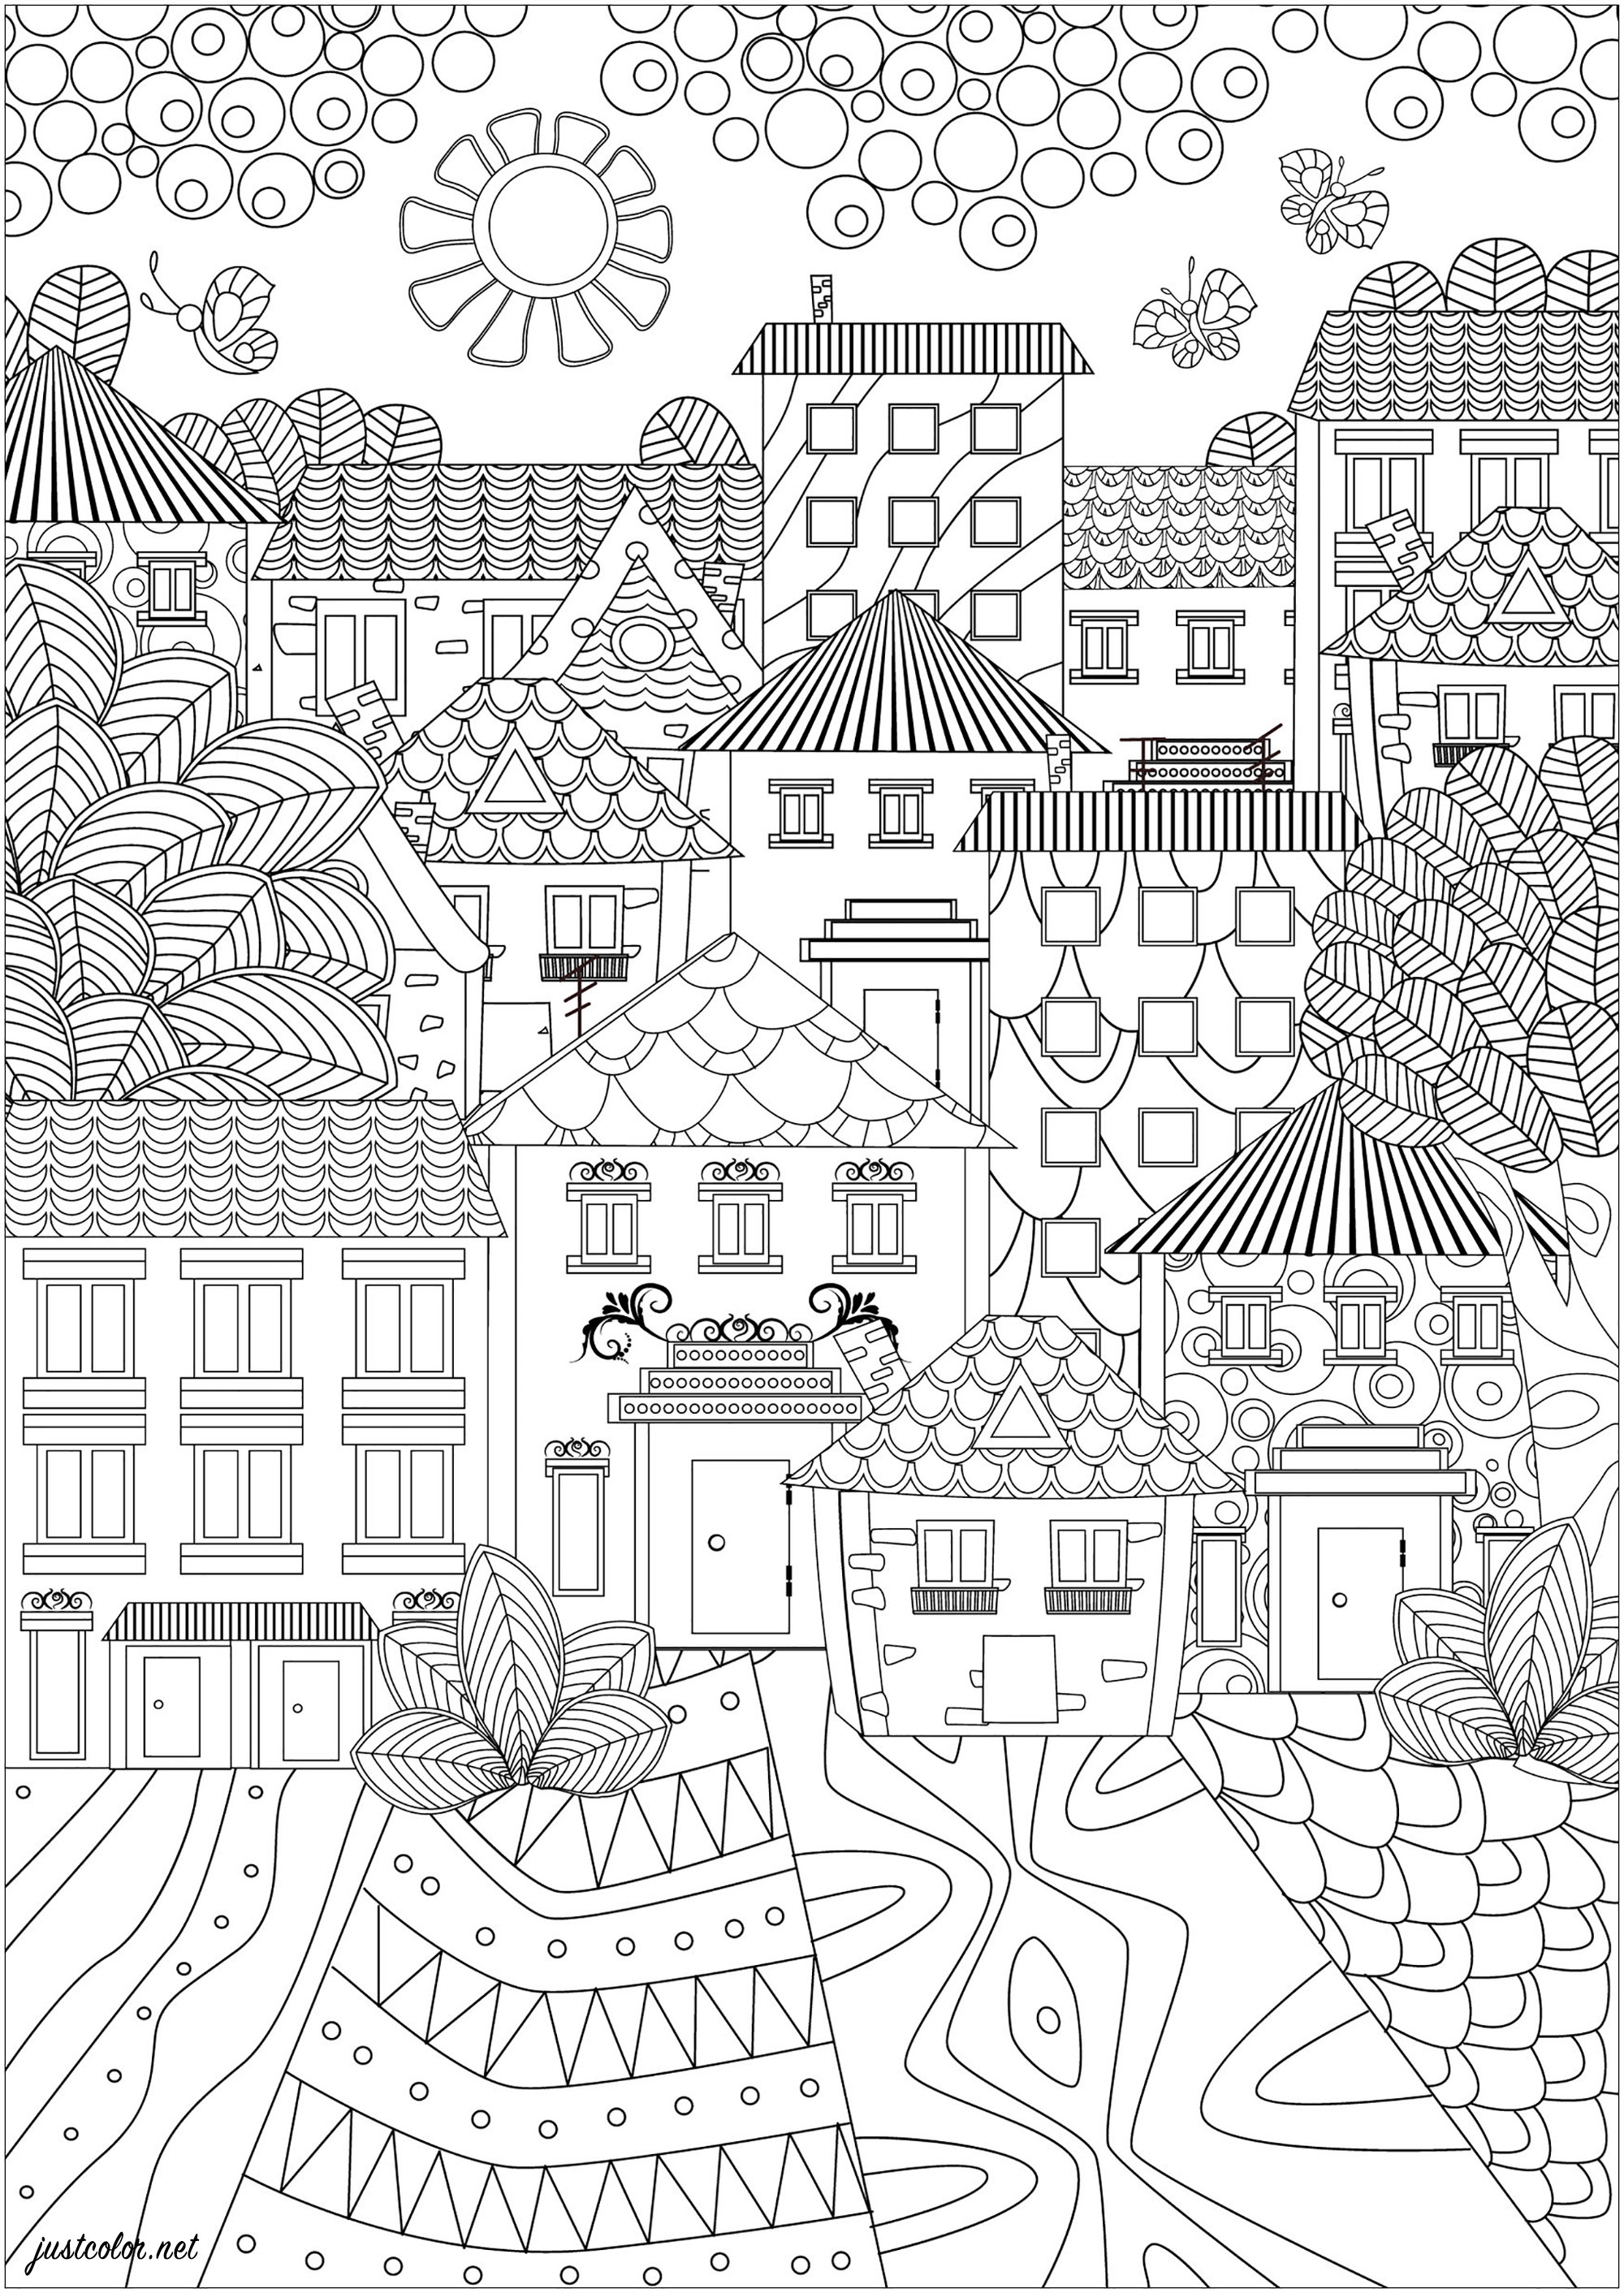 Uma cidade de belas casas com desenhos simples e elegantes. Esta página para colorir é uma paisagem urbana muito simples e elegante. Mostra uma cidade composta por bonitas casas com desenhos simples e elegantes. Os telhados são pontiagudos e as janelas são pequenas e bem decoradas. As ruas são pavimentadas com padrões que serão muito agradáveis de colorir.